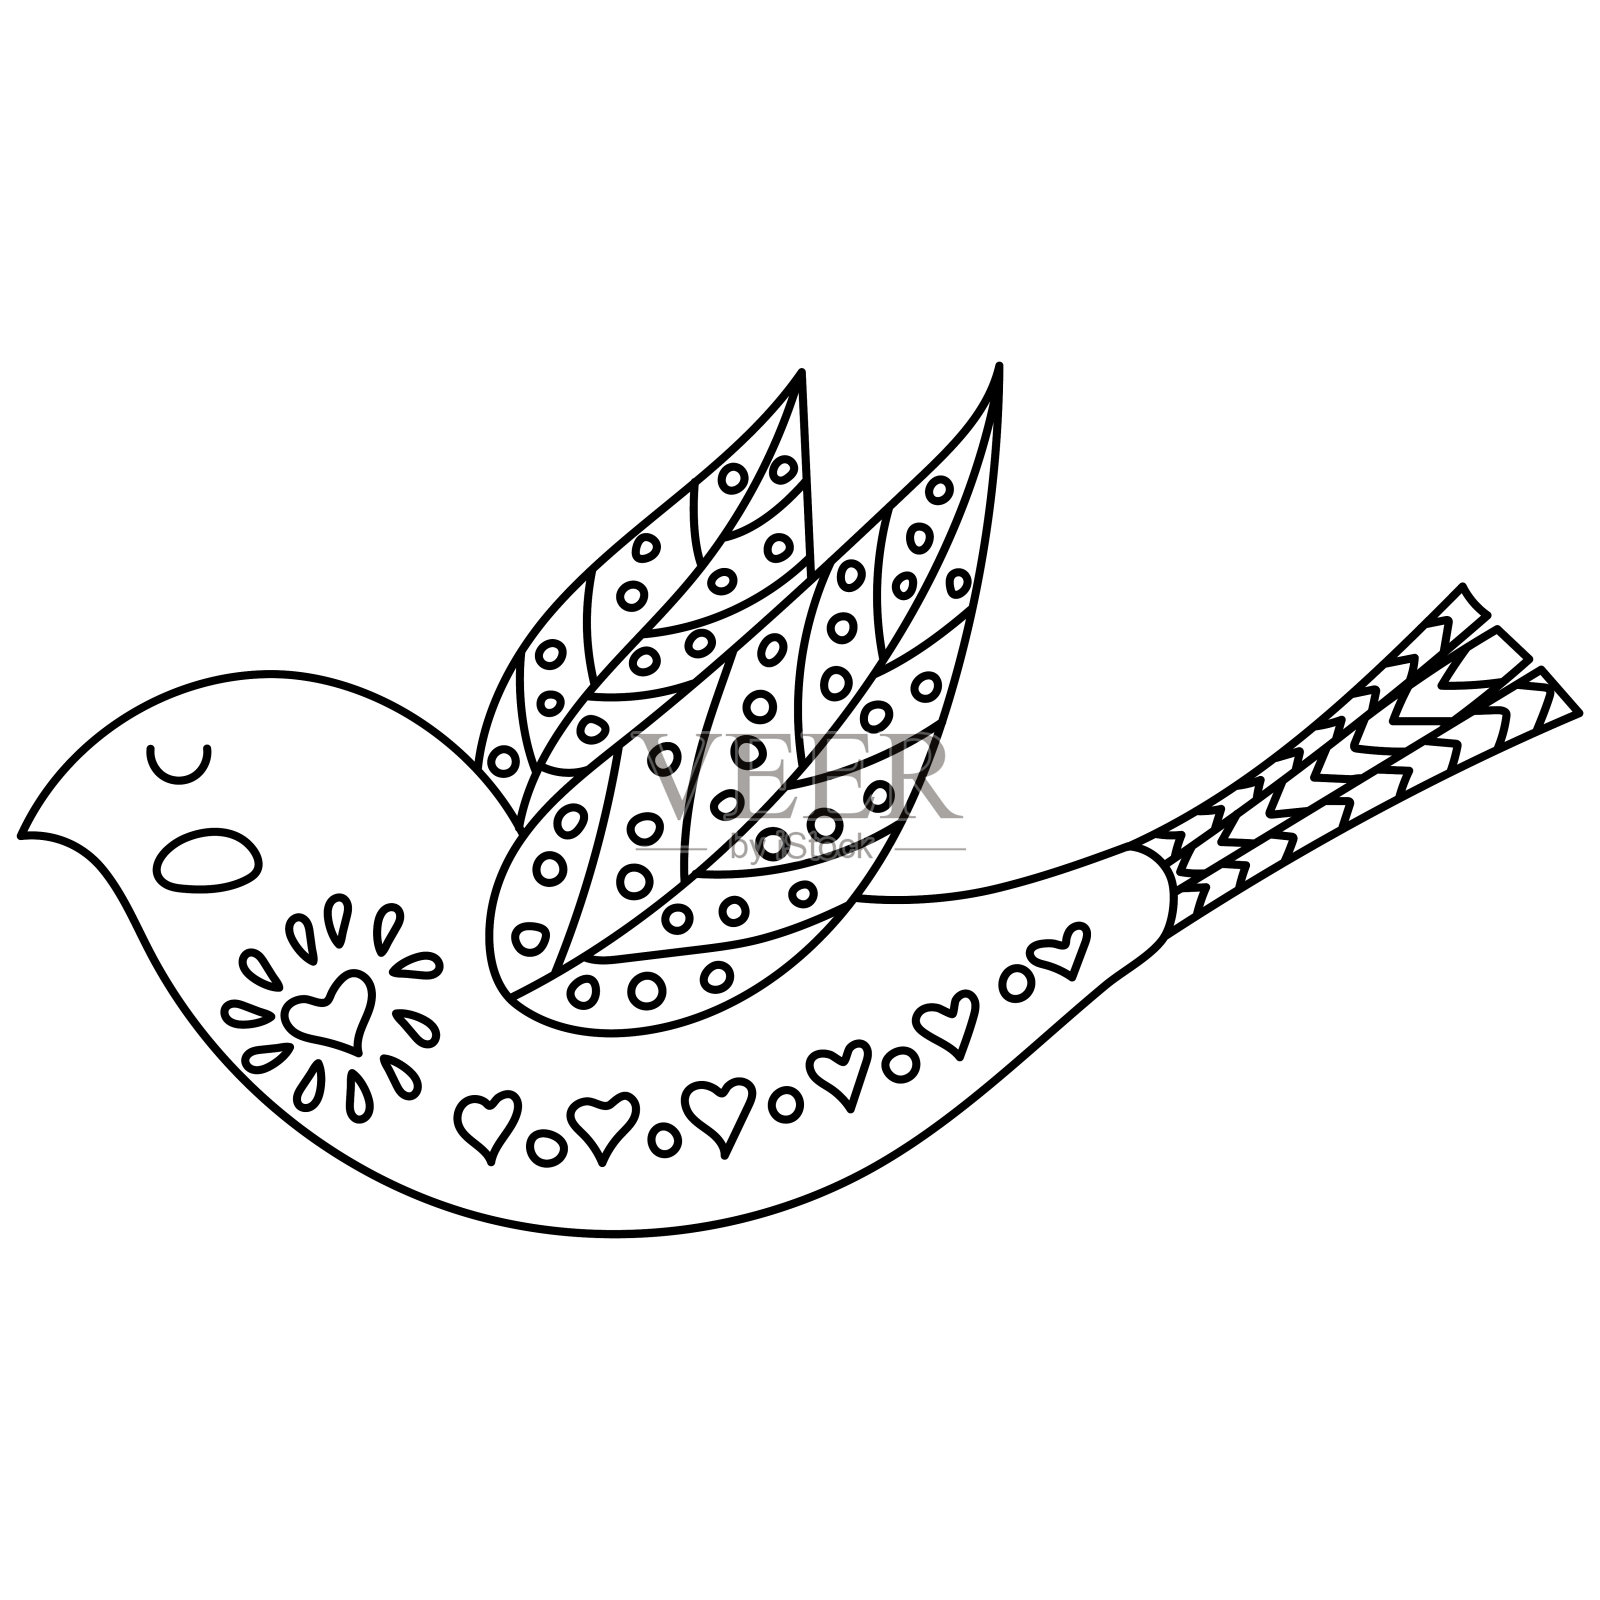 成人涂色书或书页。插图鸟与花在斯堪的纳维亚风格。民间艺术。设计元素图片